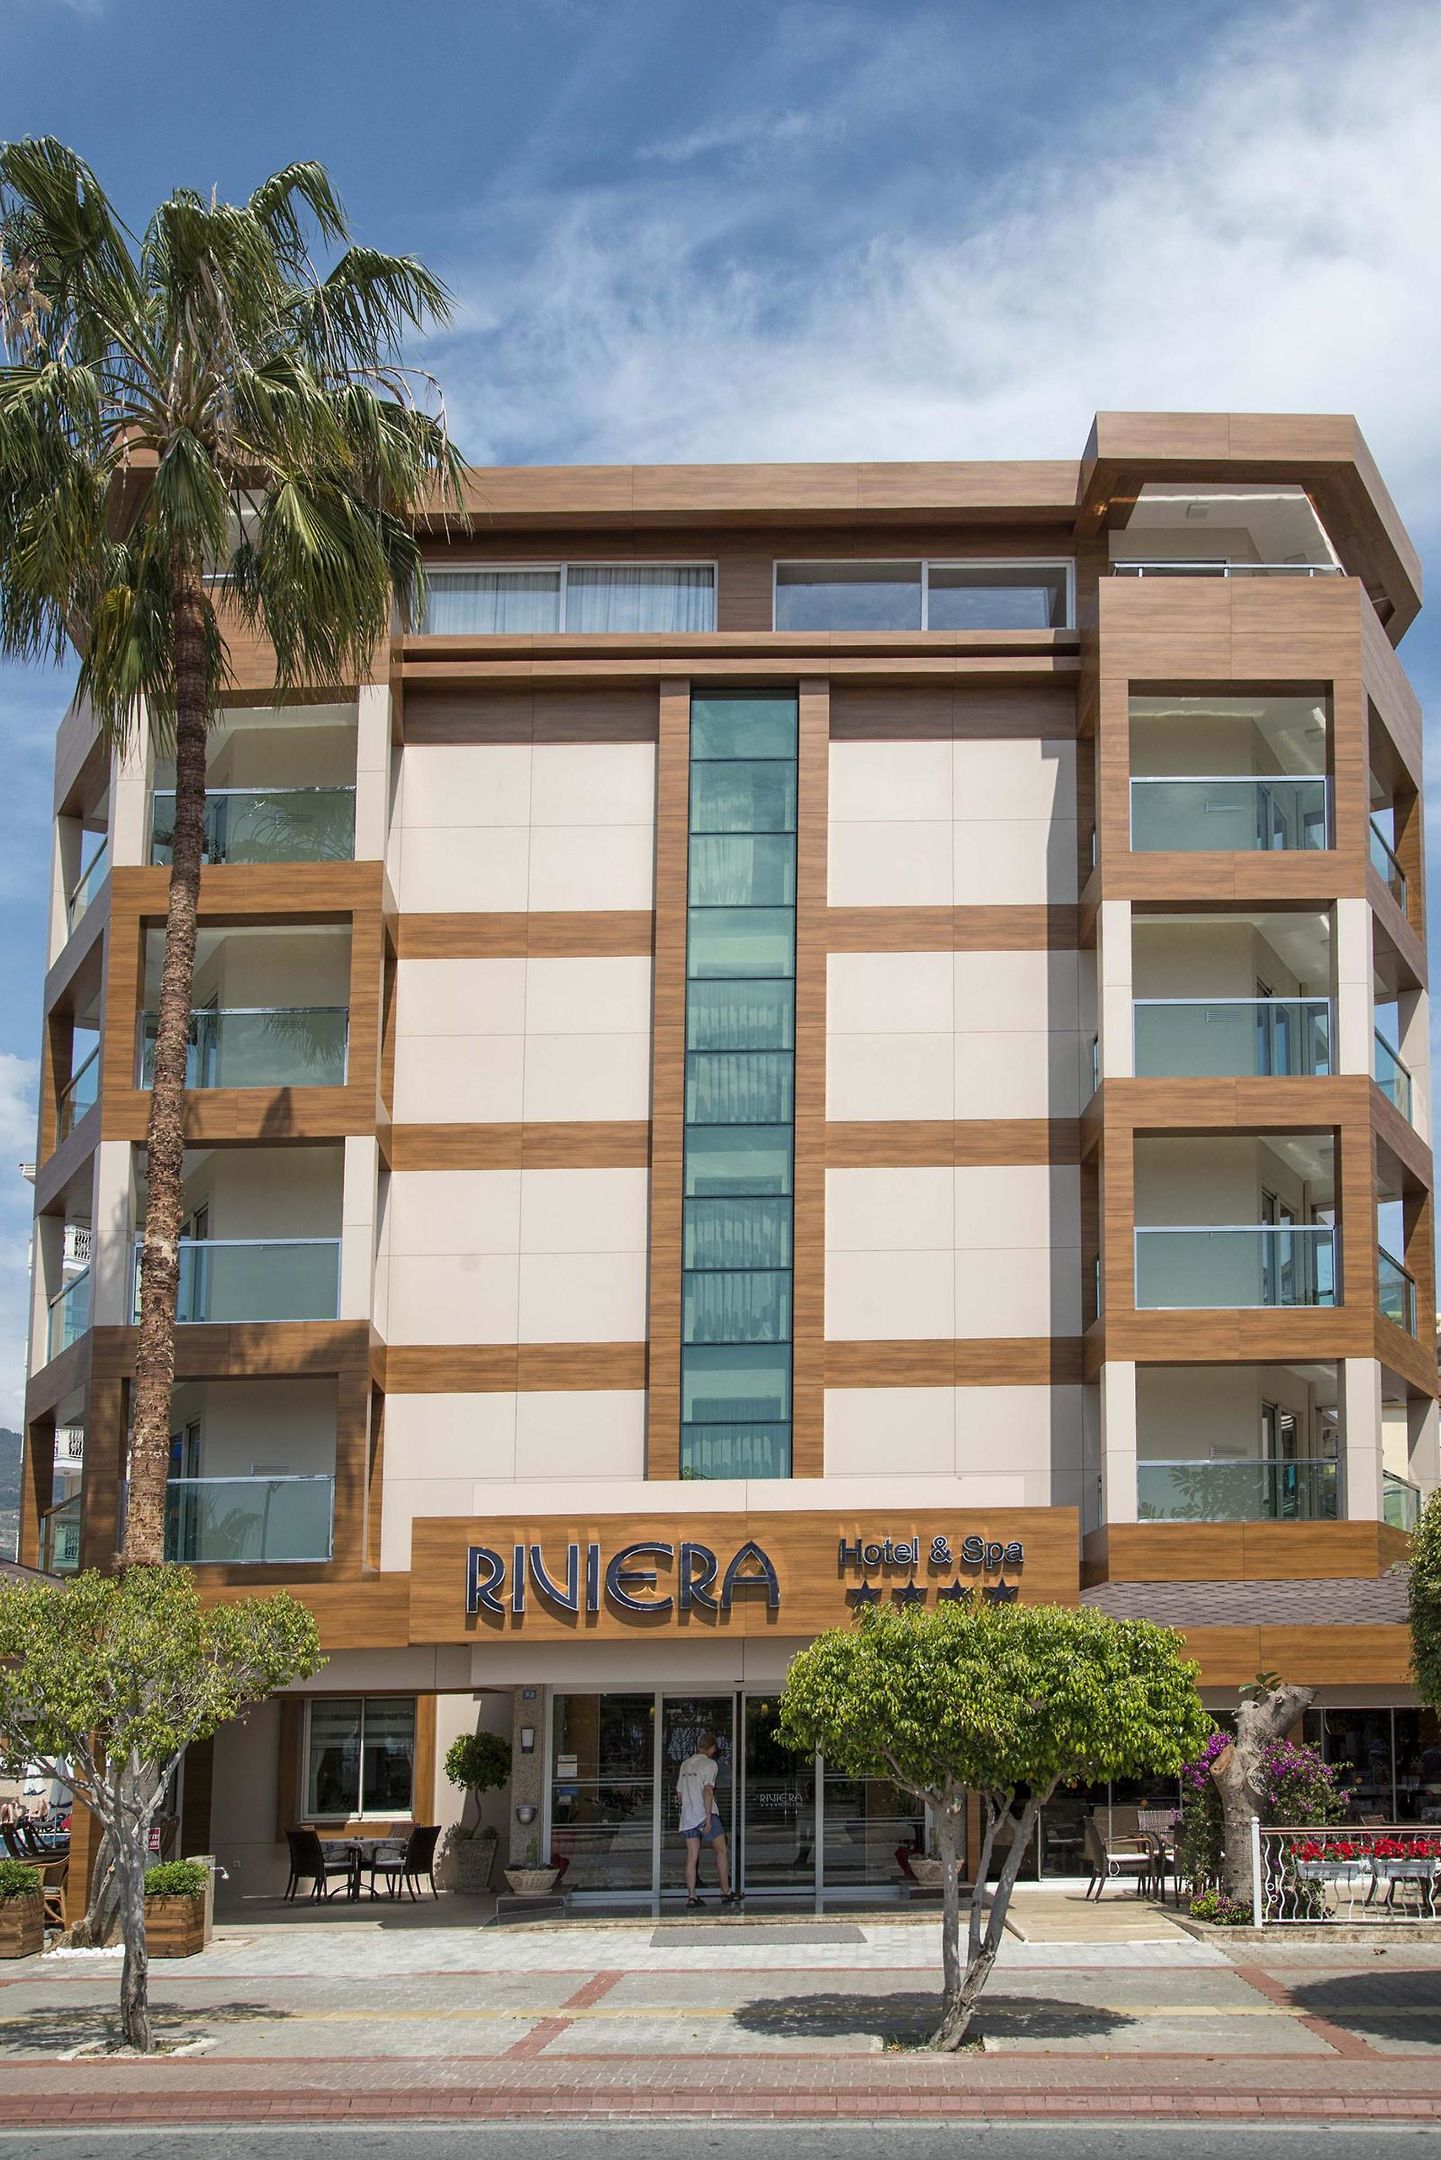 Hotel Riviera Hotel & Spa